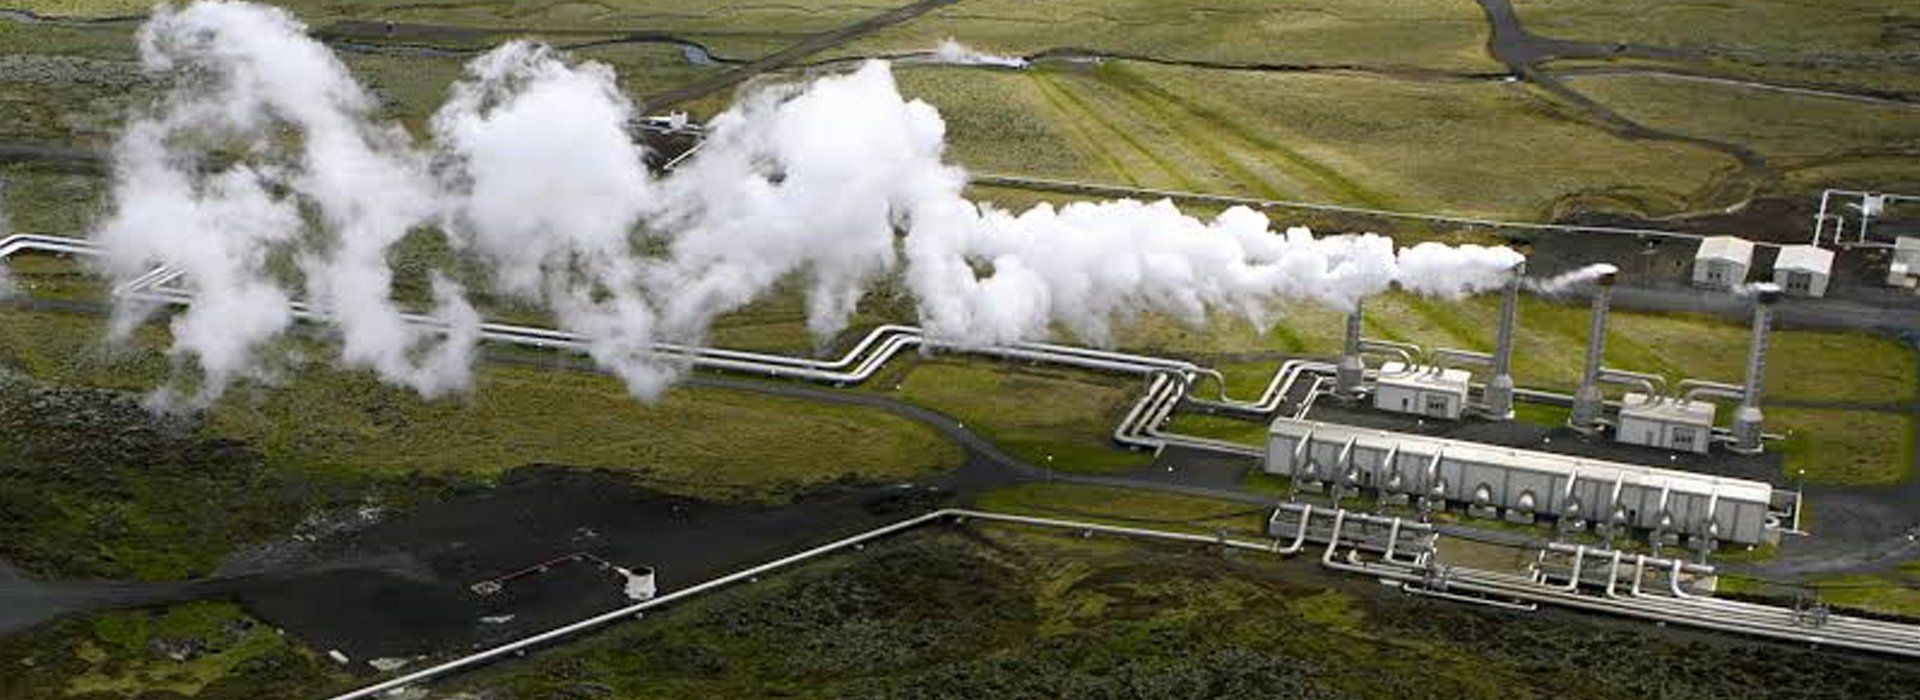 jeotermal enerji santralleri